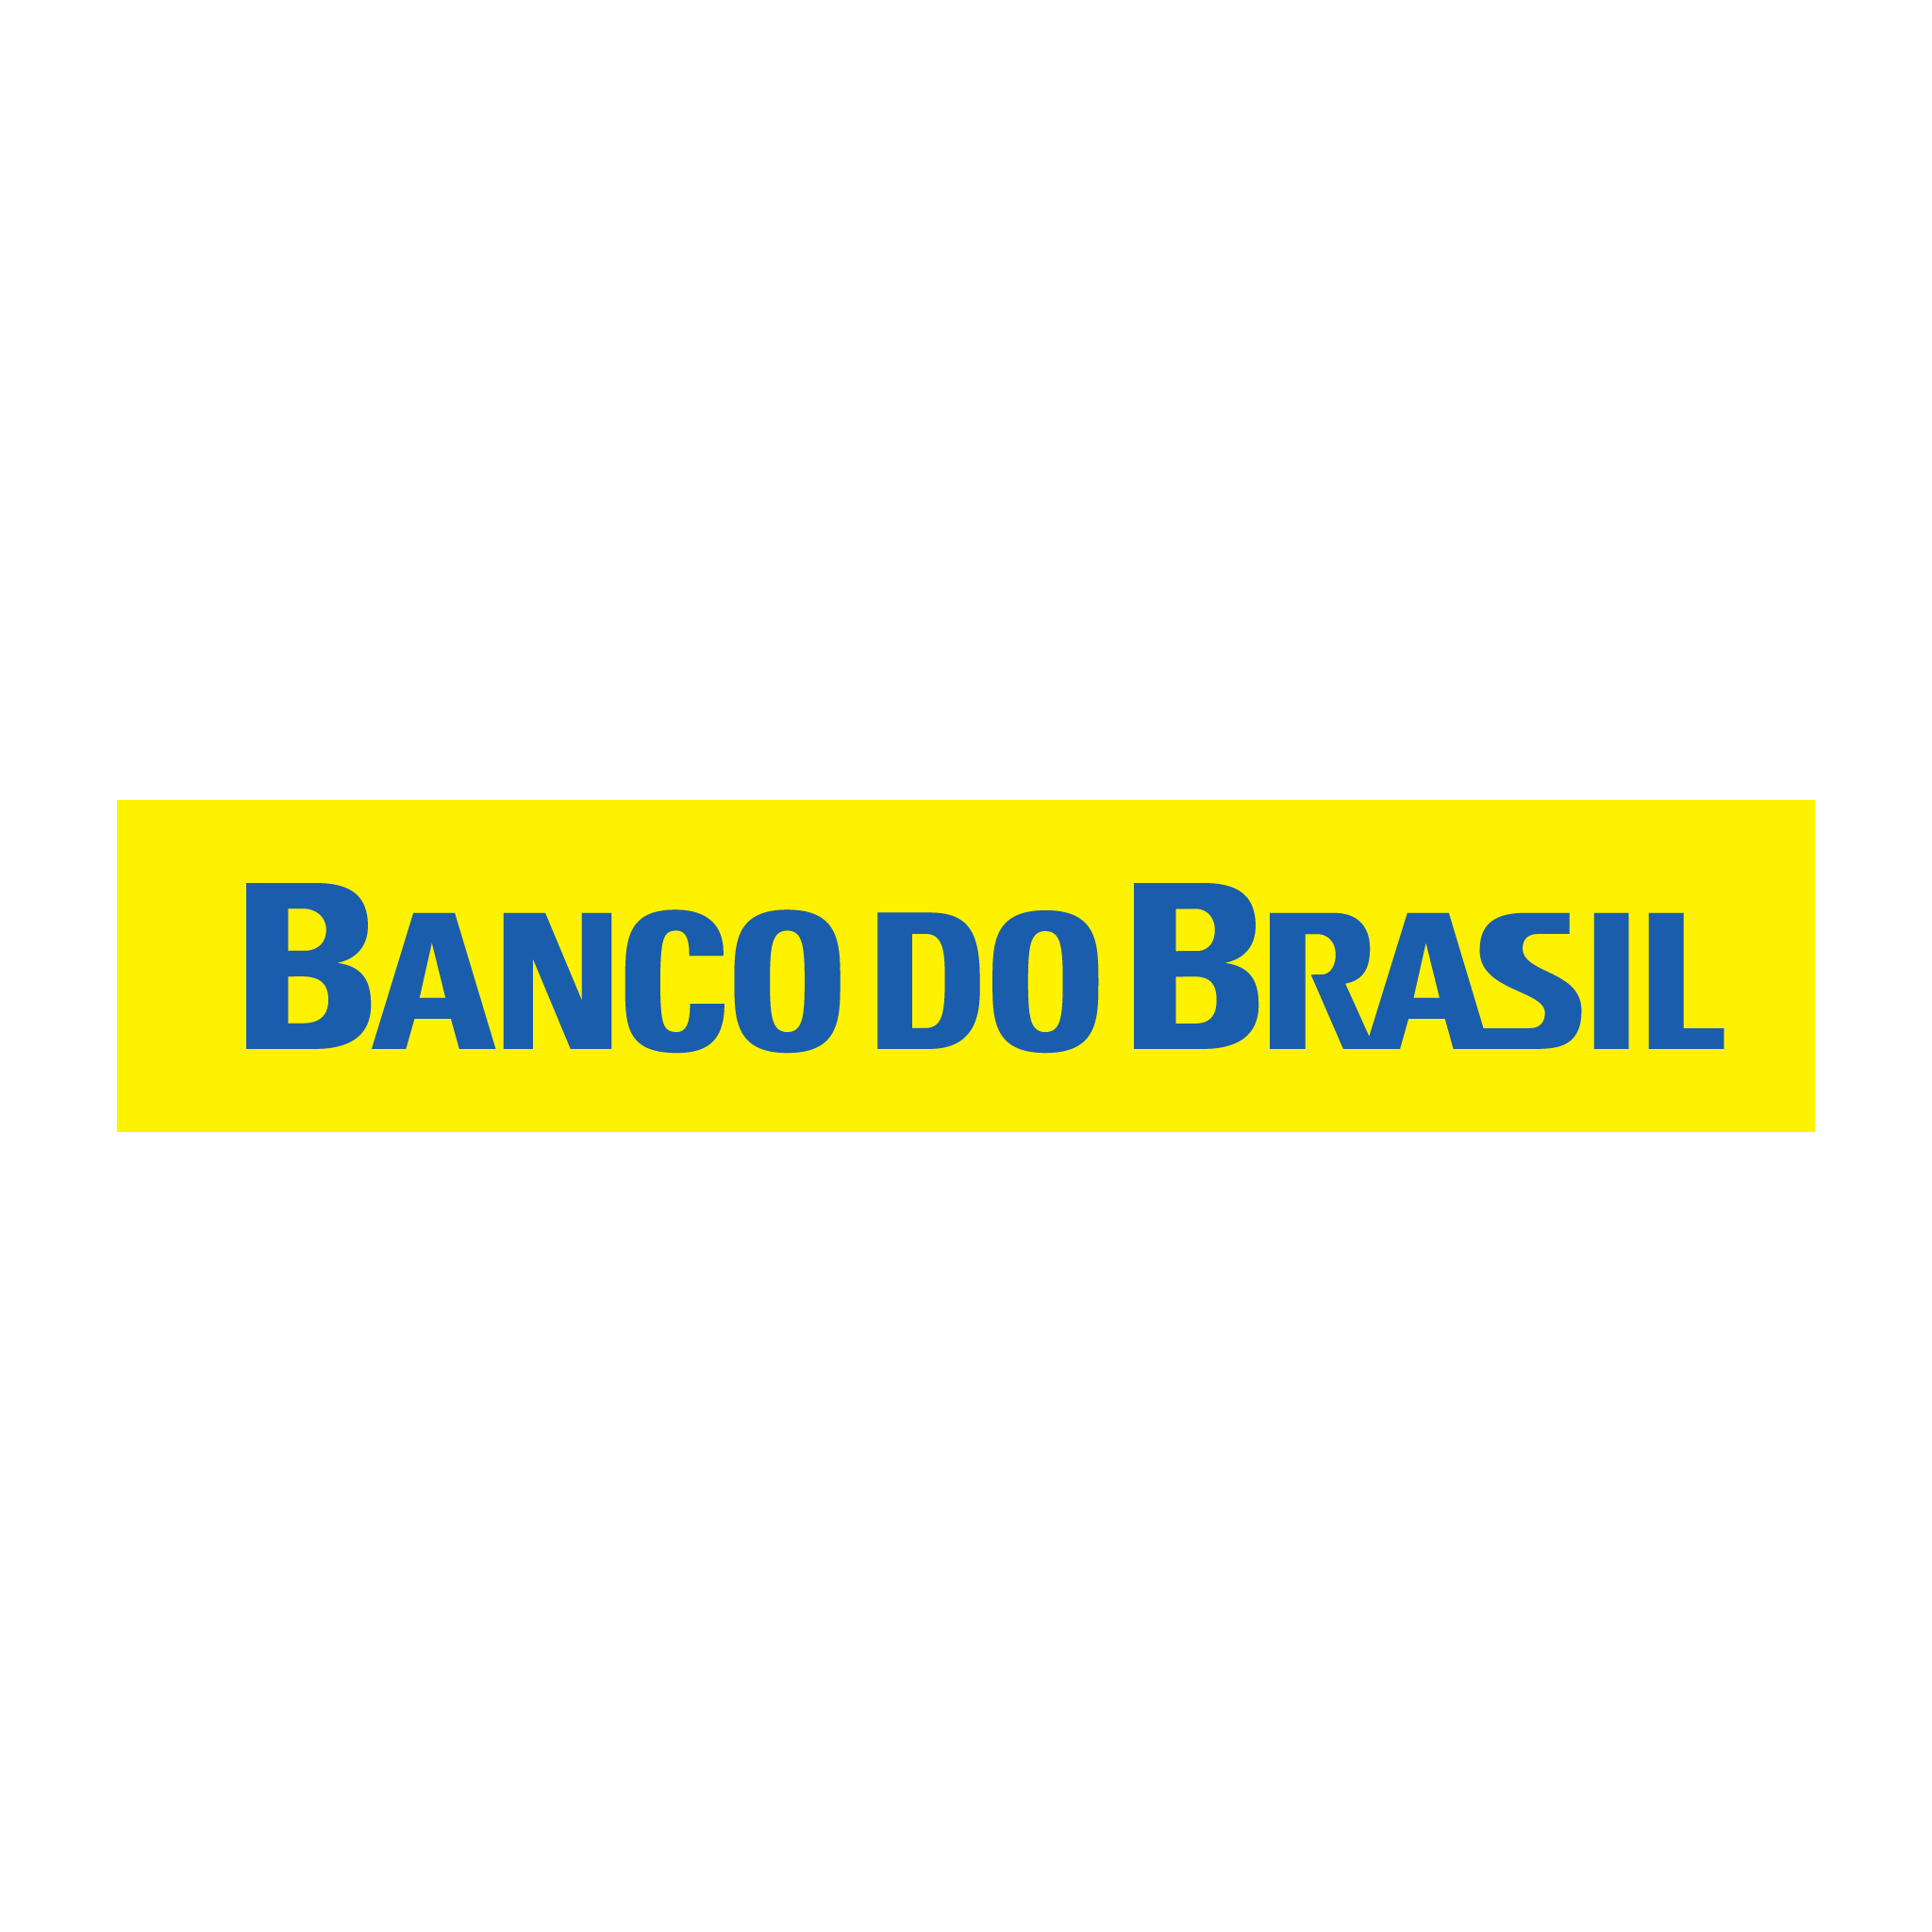 brasao do banco do brasil horizontal